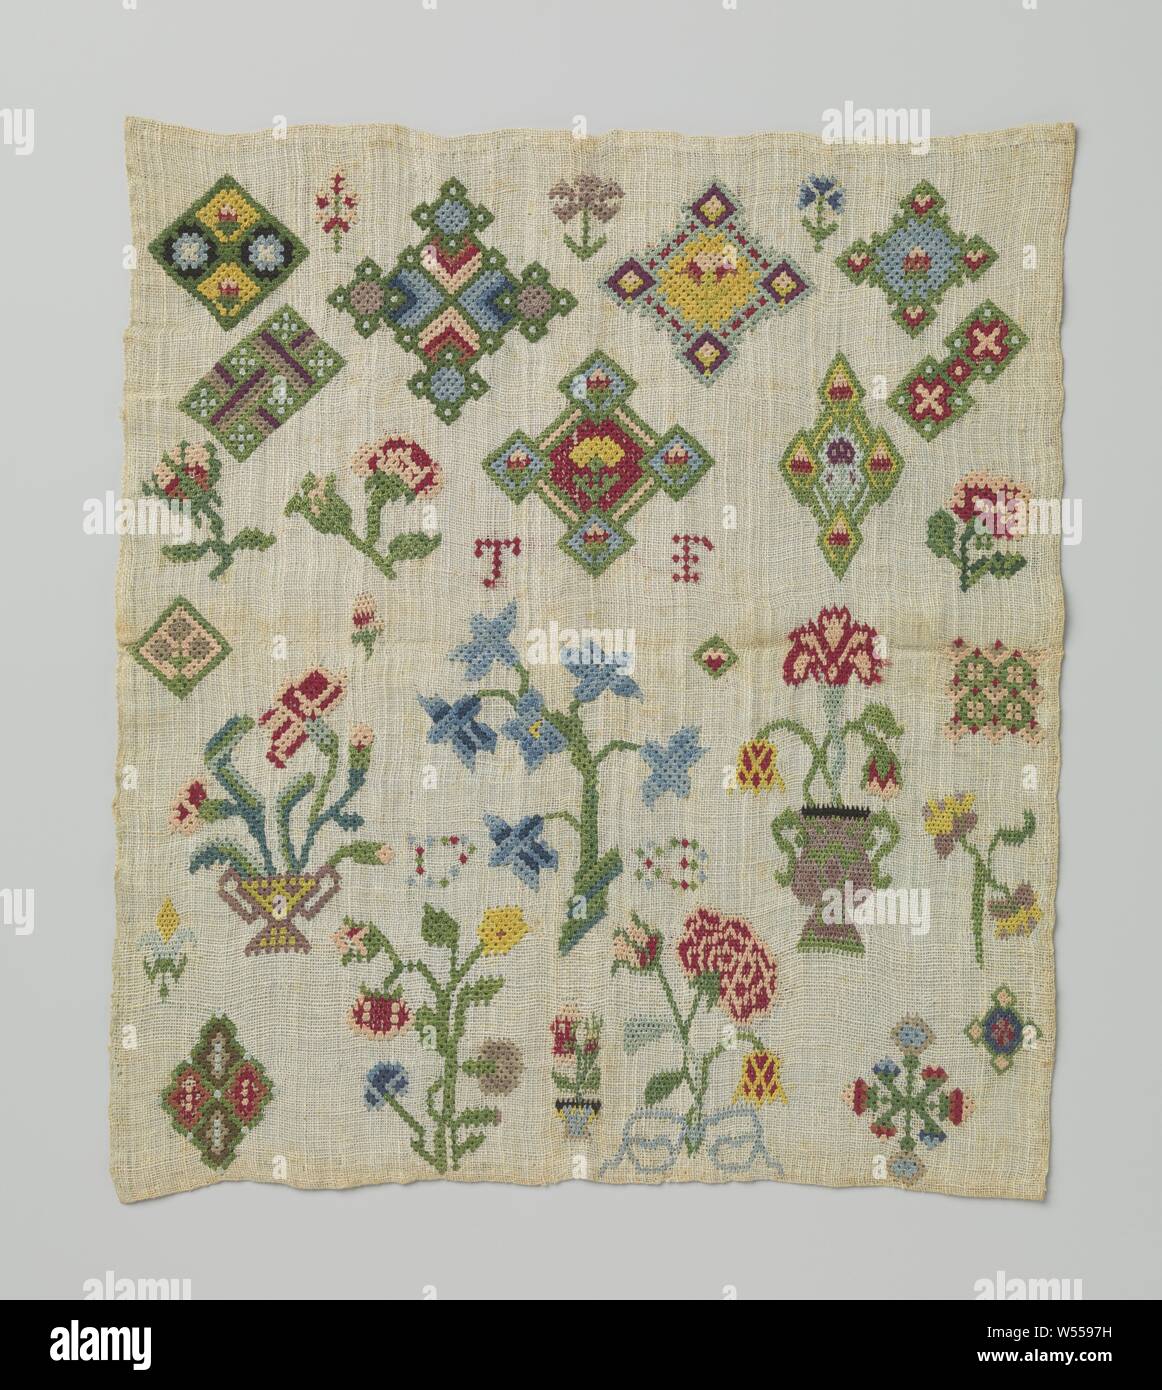 Parche bordado de lienzo de lino con diamantes multicolores y dibujos de flores  bordadas con seda rococó o manojo stitch alrededor de TF y 1783.,  geométricas empastes y ramos. La ropa de